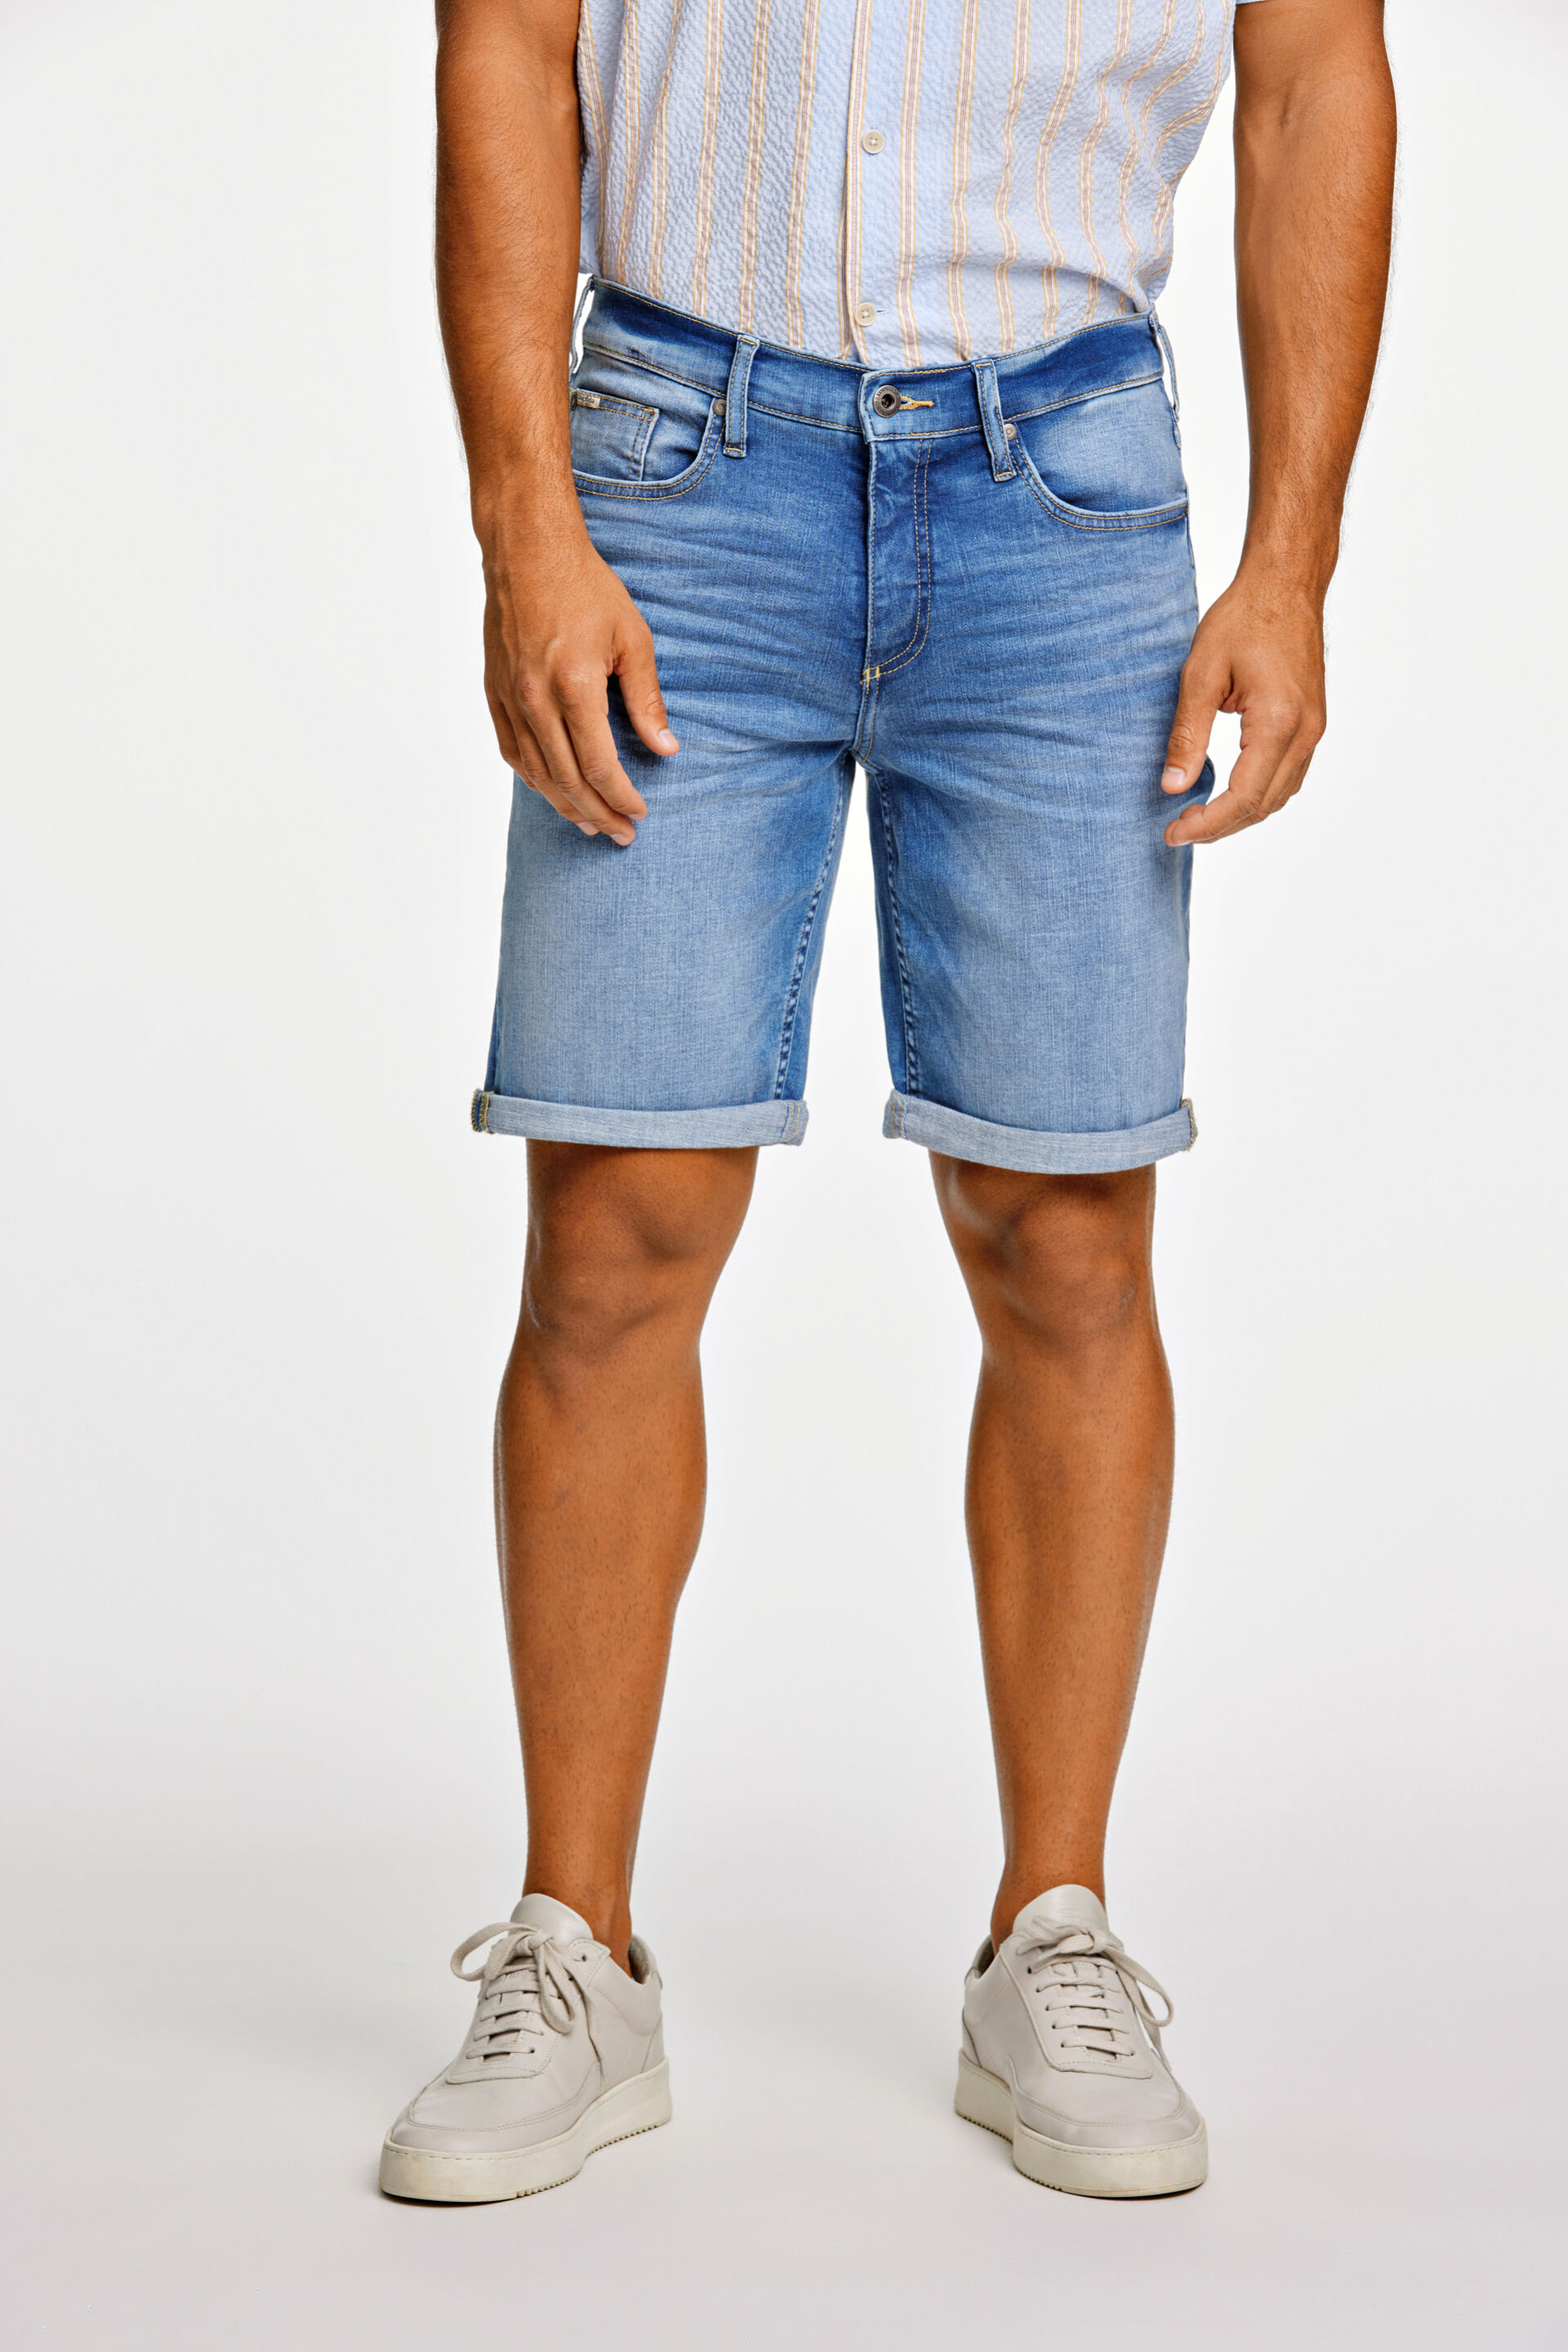 Jeans-Shorts 30-550002RIB